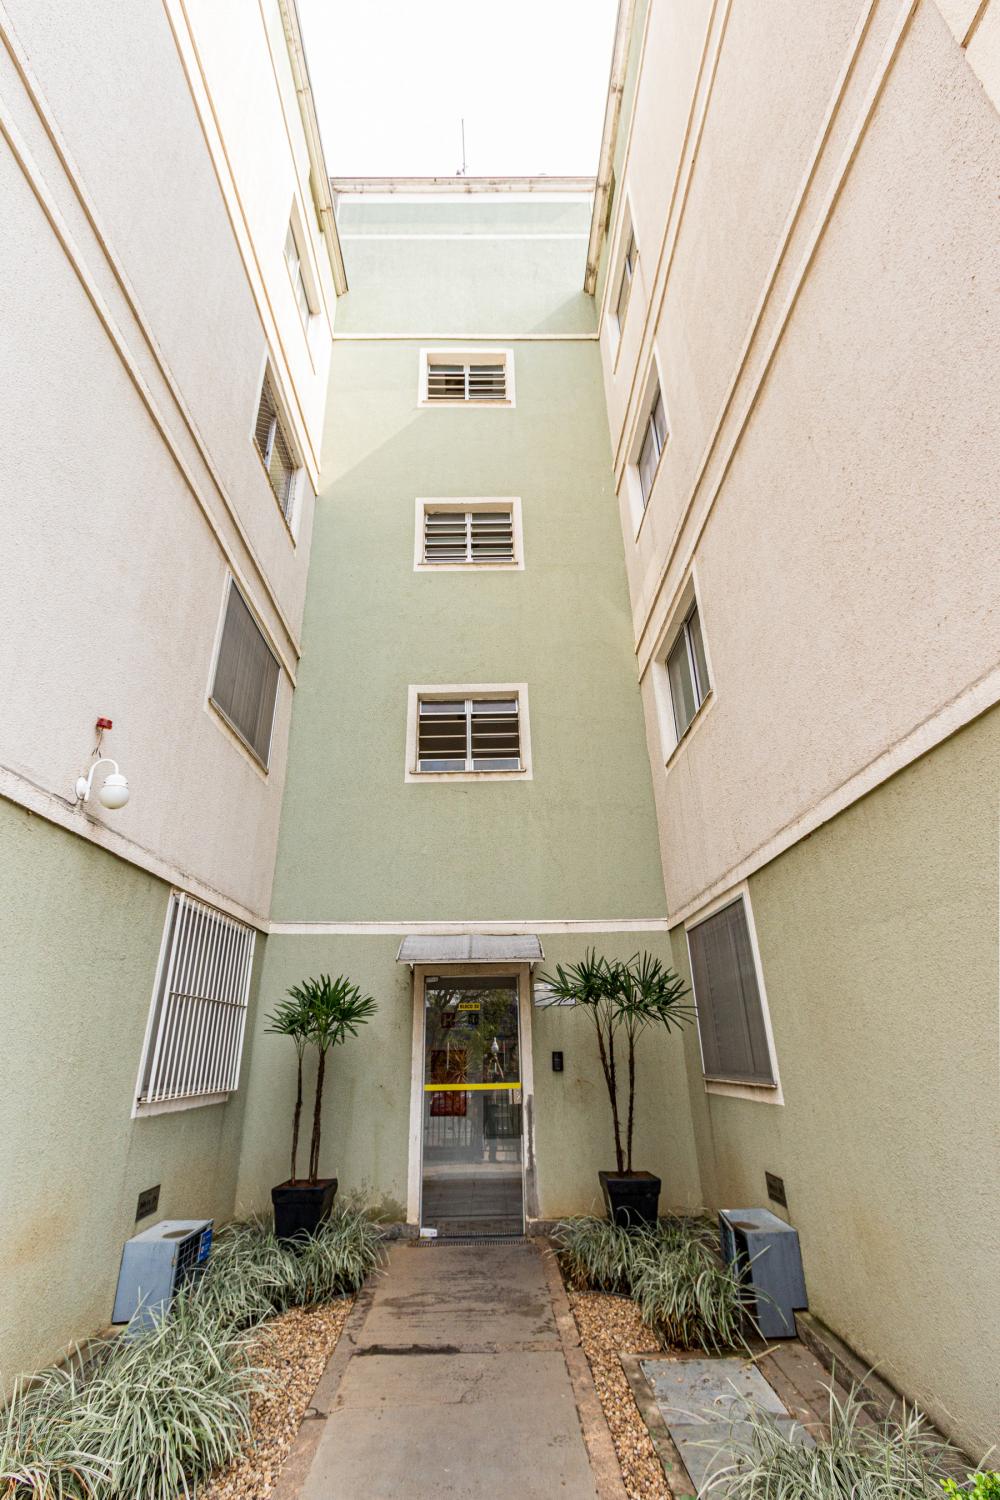 Excelente apartamento no bairro Piracicamirim, contendo Sala,varanda, cozinha planejada,02 dormitórios sendo 01 suíte, banheiro social.
Estuda Financiamento e FGTS.